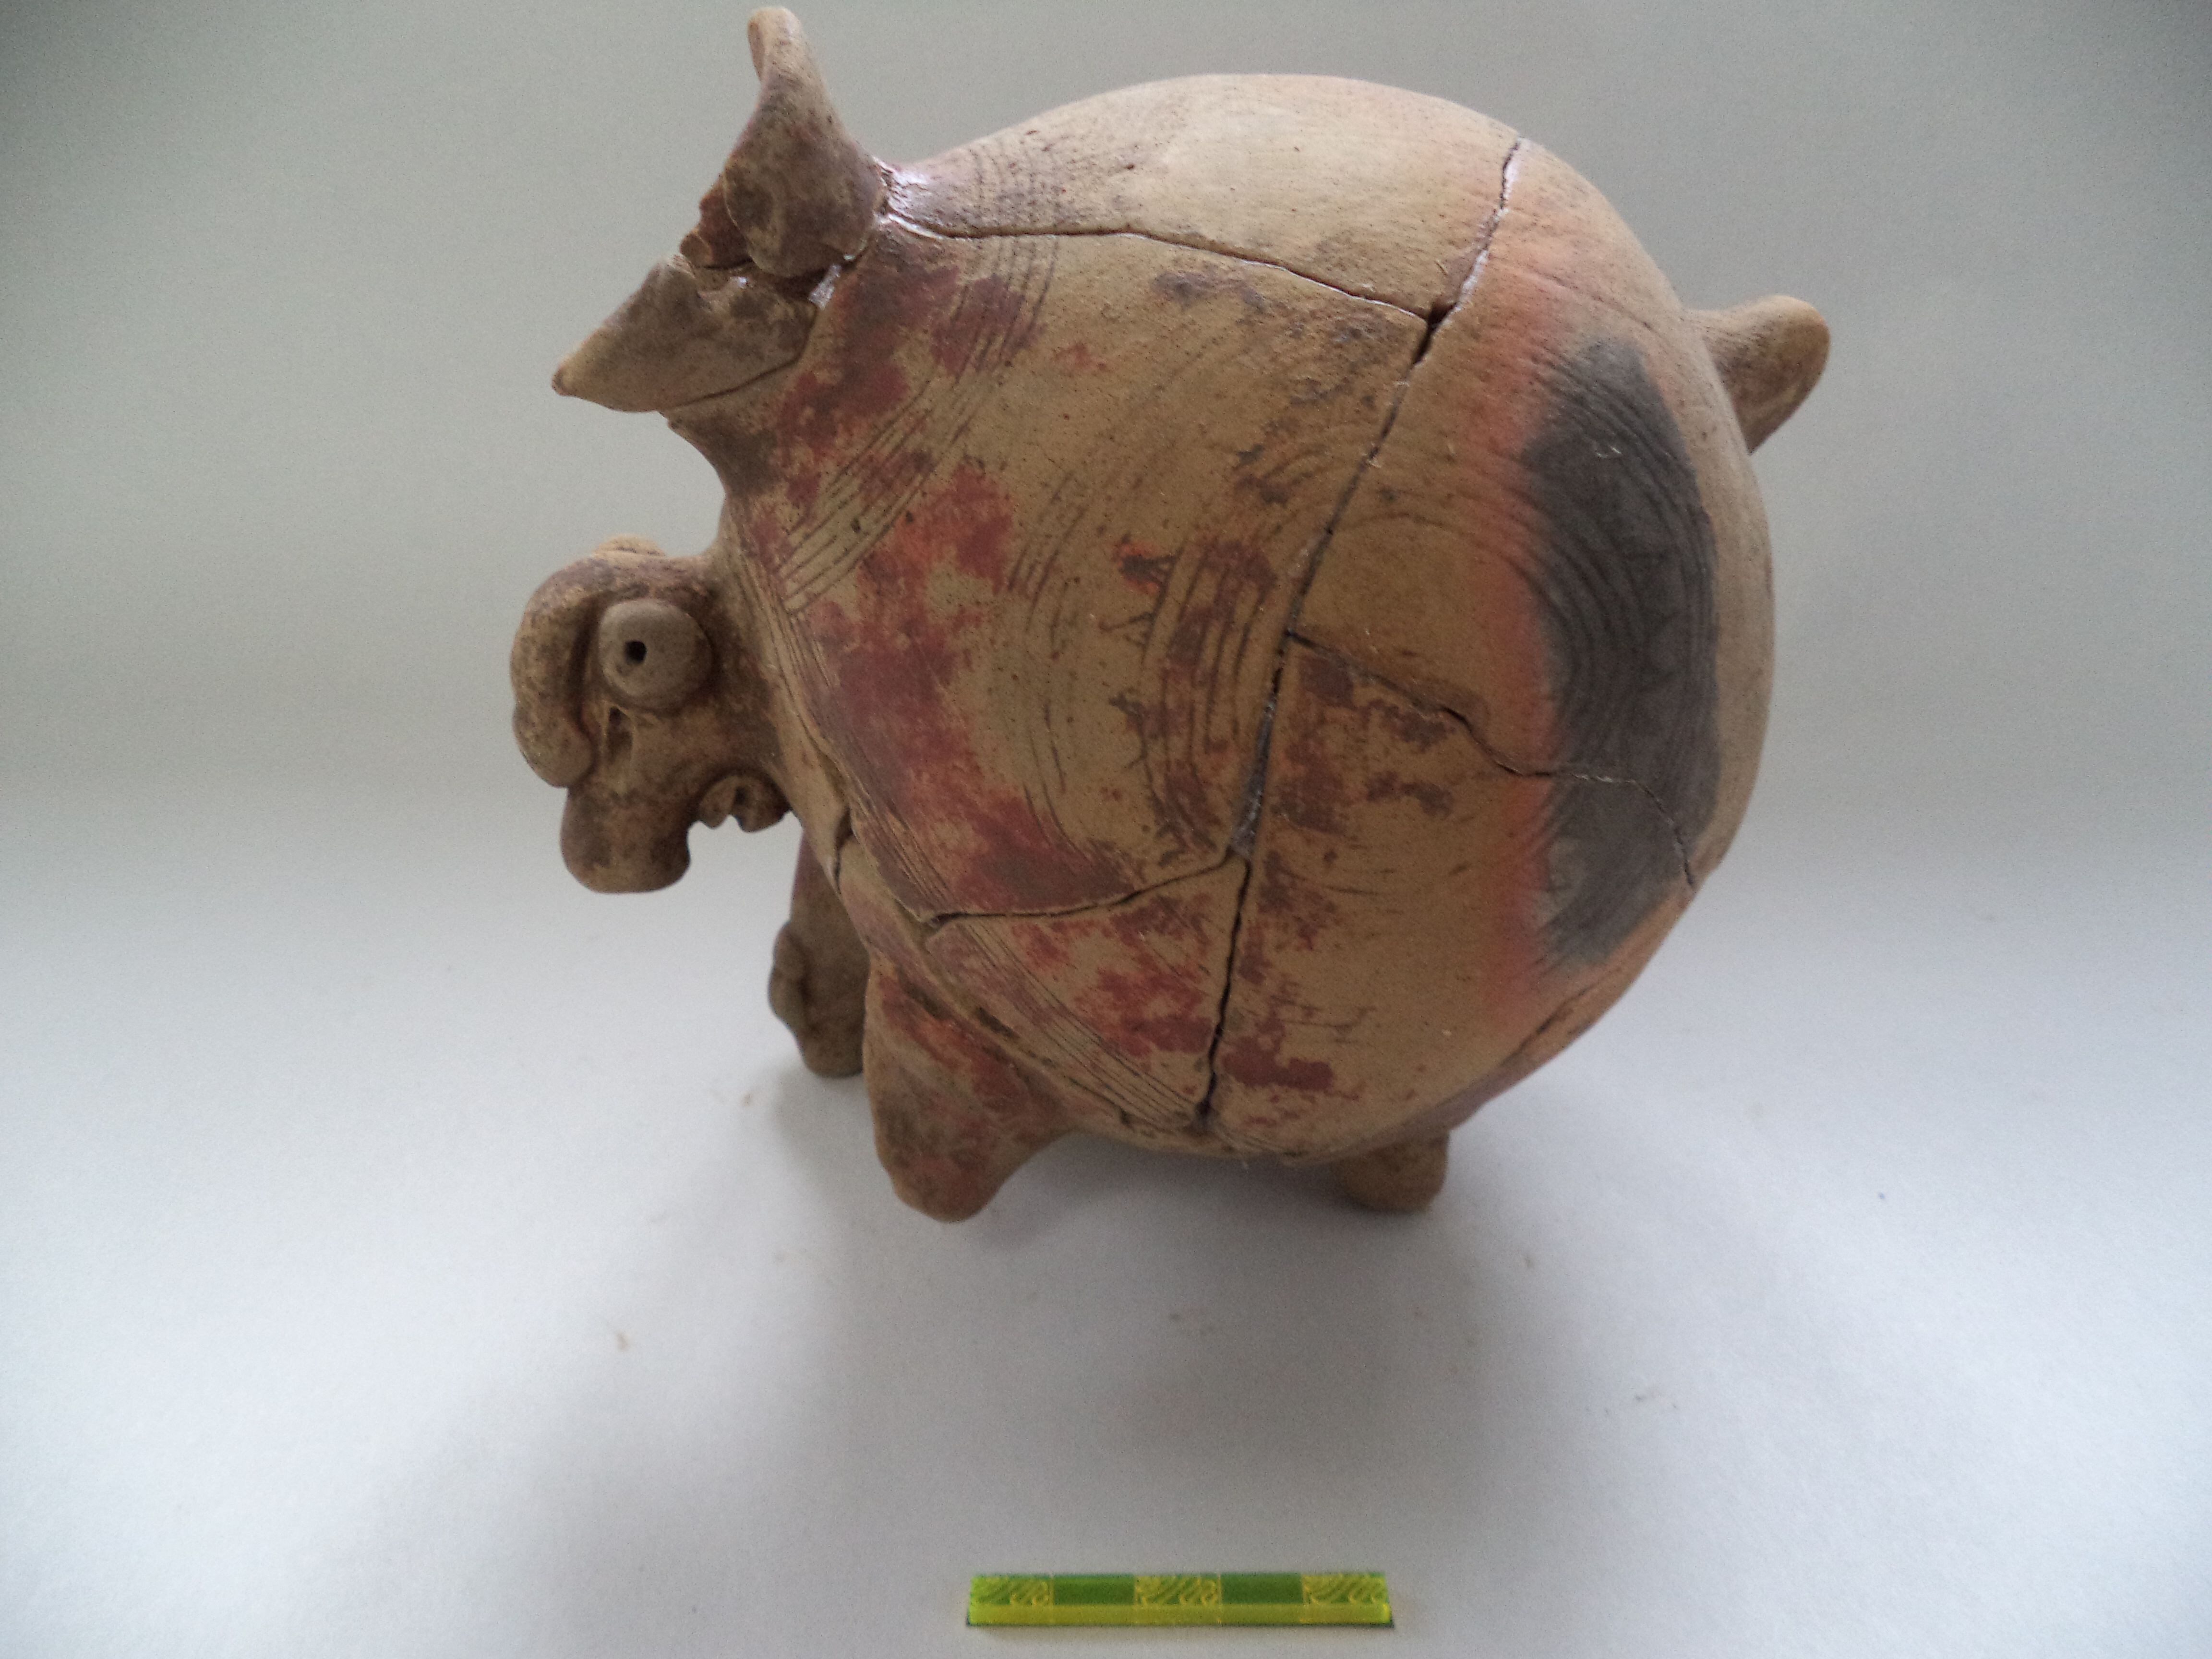 Estas fueron vasijas encontradas como parte de un ajuar funerario.

Fotografía: Mauricio Murillo